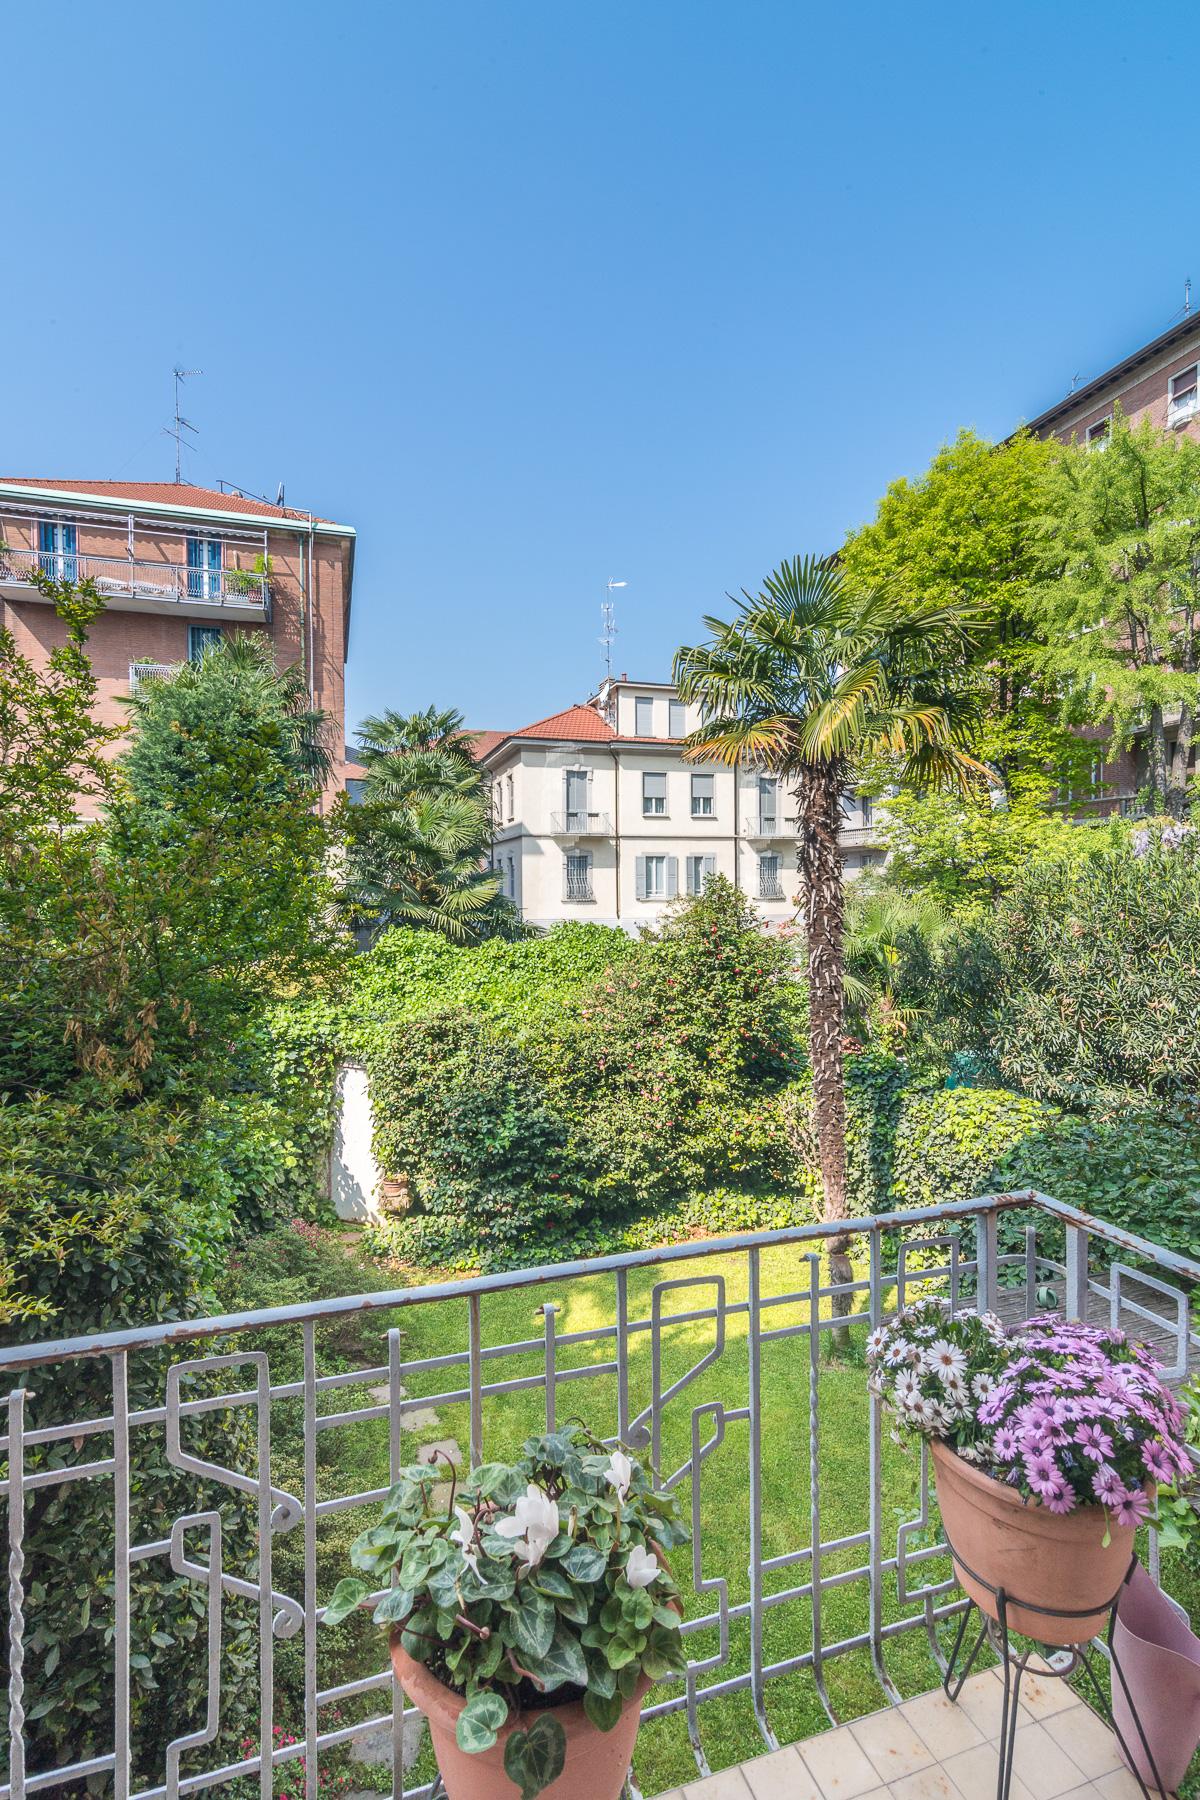 Villetta con giardino privato - 30